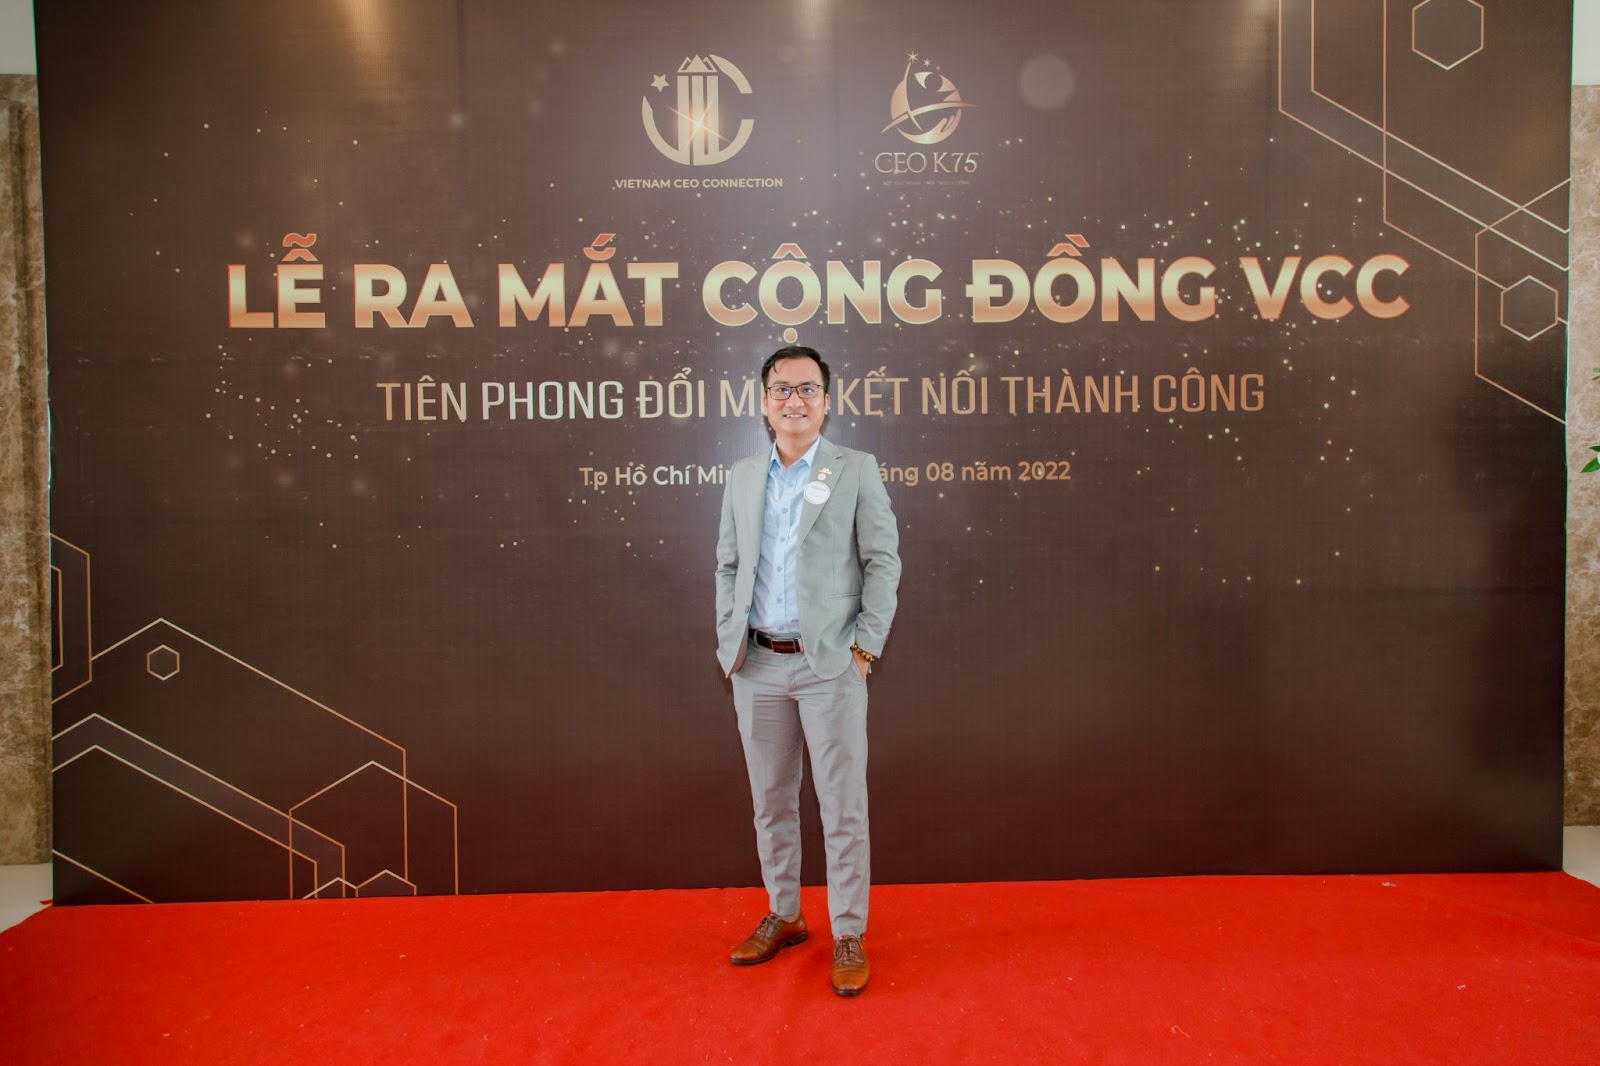 Lễ ra mắt cộng đồng VCC - Chương trình kết nối các CEO Việt Nam - 5